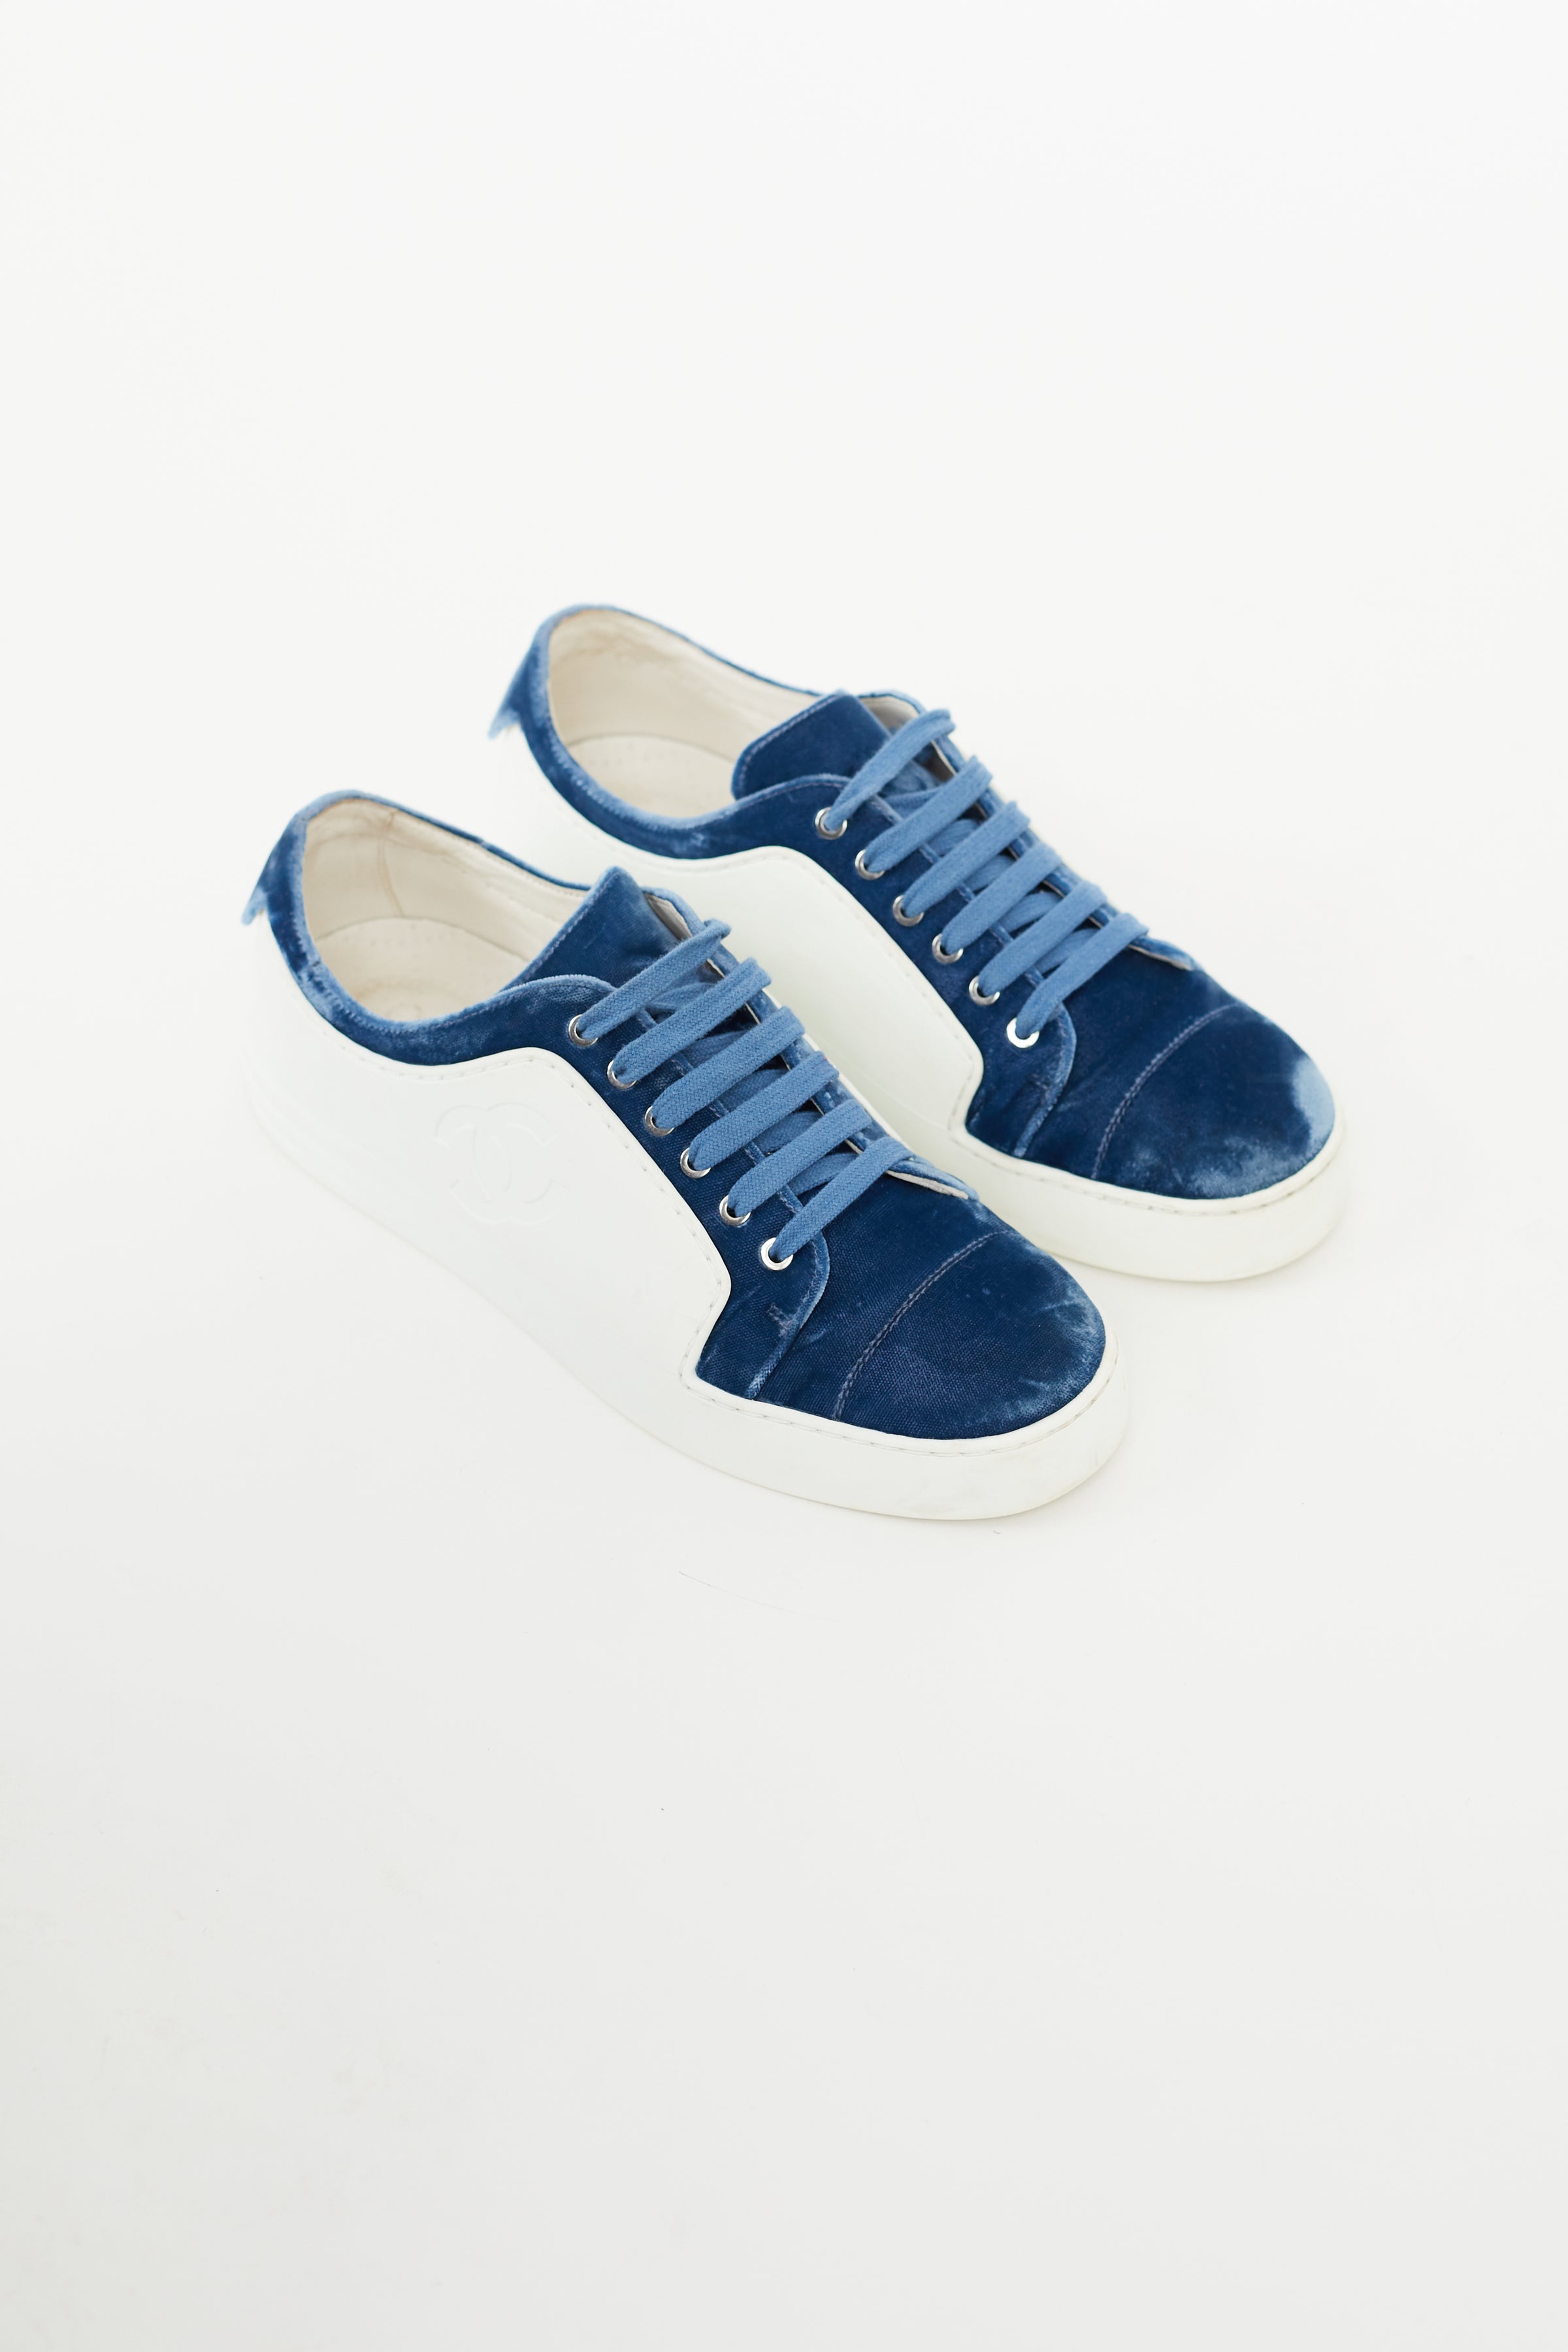 Chanel // Blue & White Velvet Sneaker – VSP Consignment